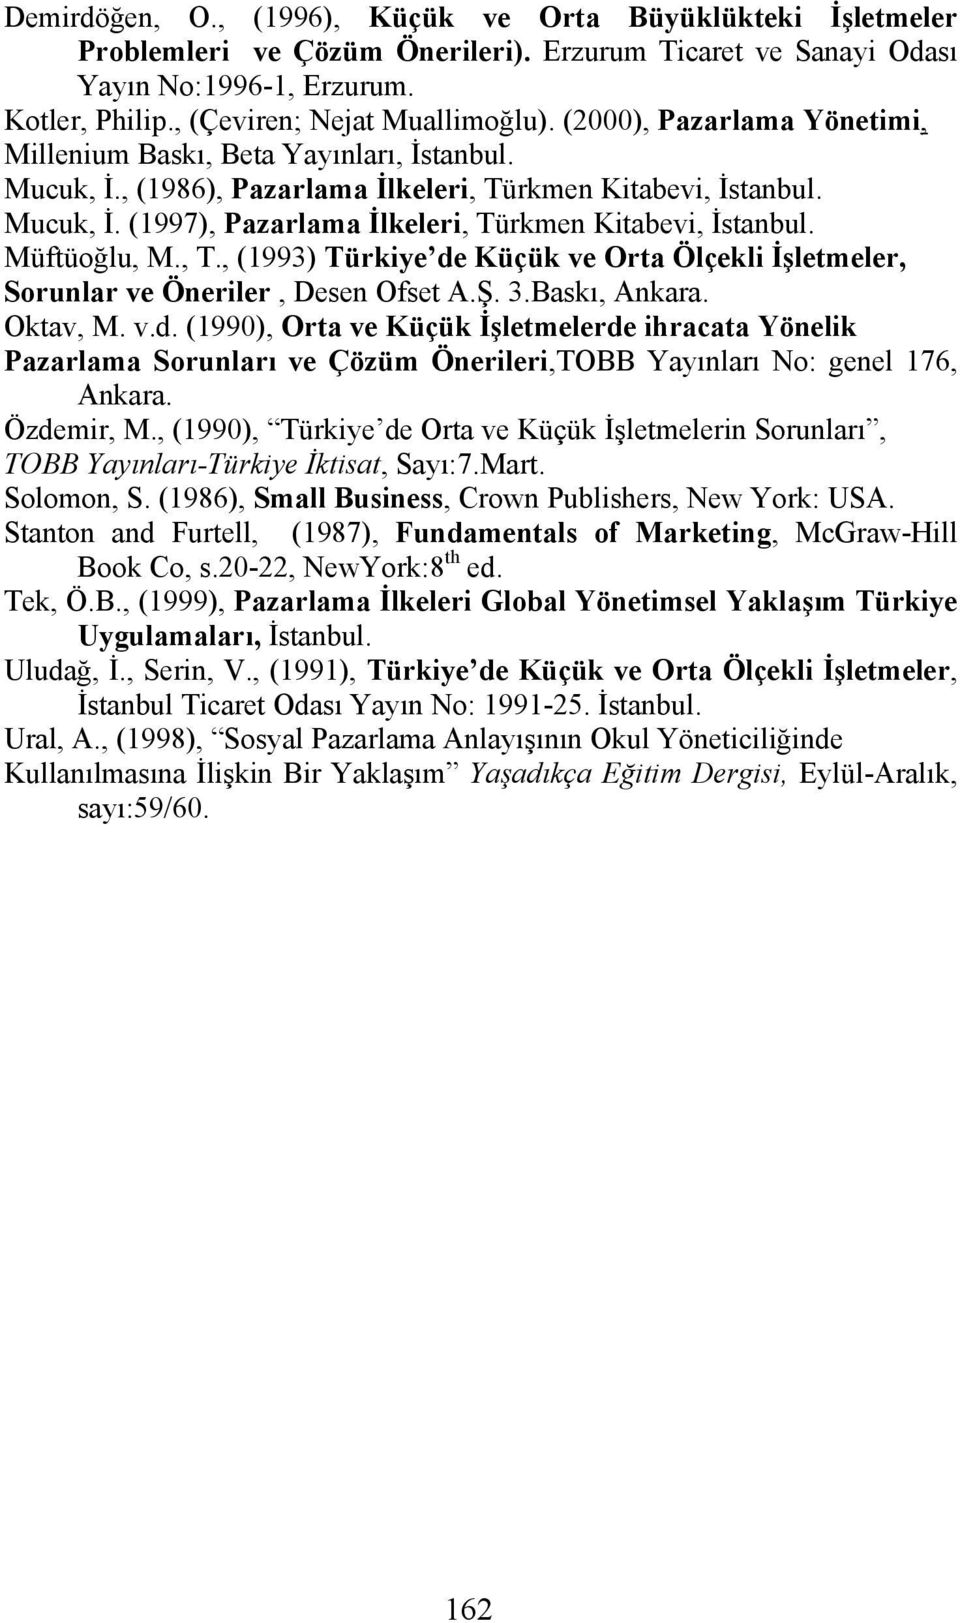 Müftüoğlu, M., T., (1993) Türkiye de Küçük ve Orta Ölçekli İşletmeler, Sorunlar ve Öneriler, Desen Ofset A.Ş. 3.Baskı, Ankara. Oktav, M. v.d. (1990), Orta ve Küçük İşletmelerde ihracata Yönelik Pazarlama Sorunları ve Çözüm Önerileri,TOBB Yayınları No: genel 176, Ankara.